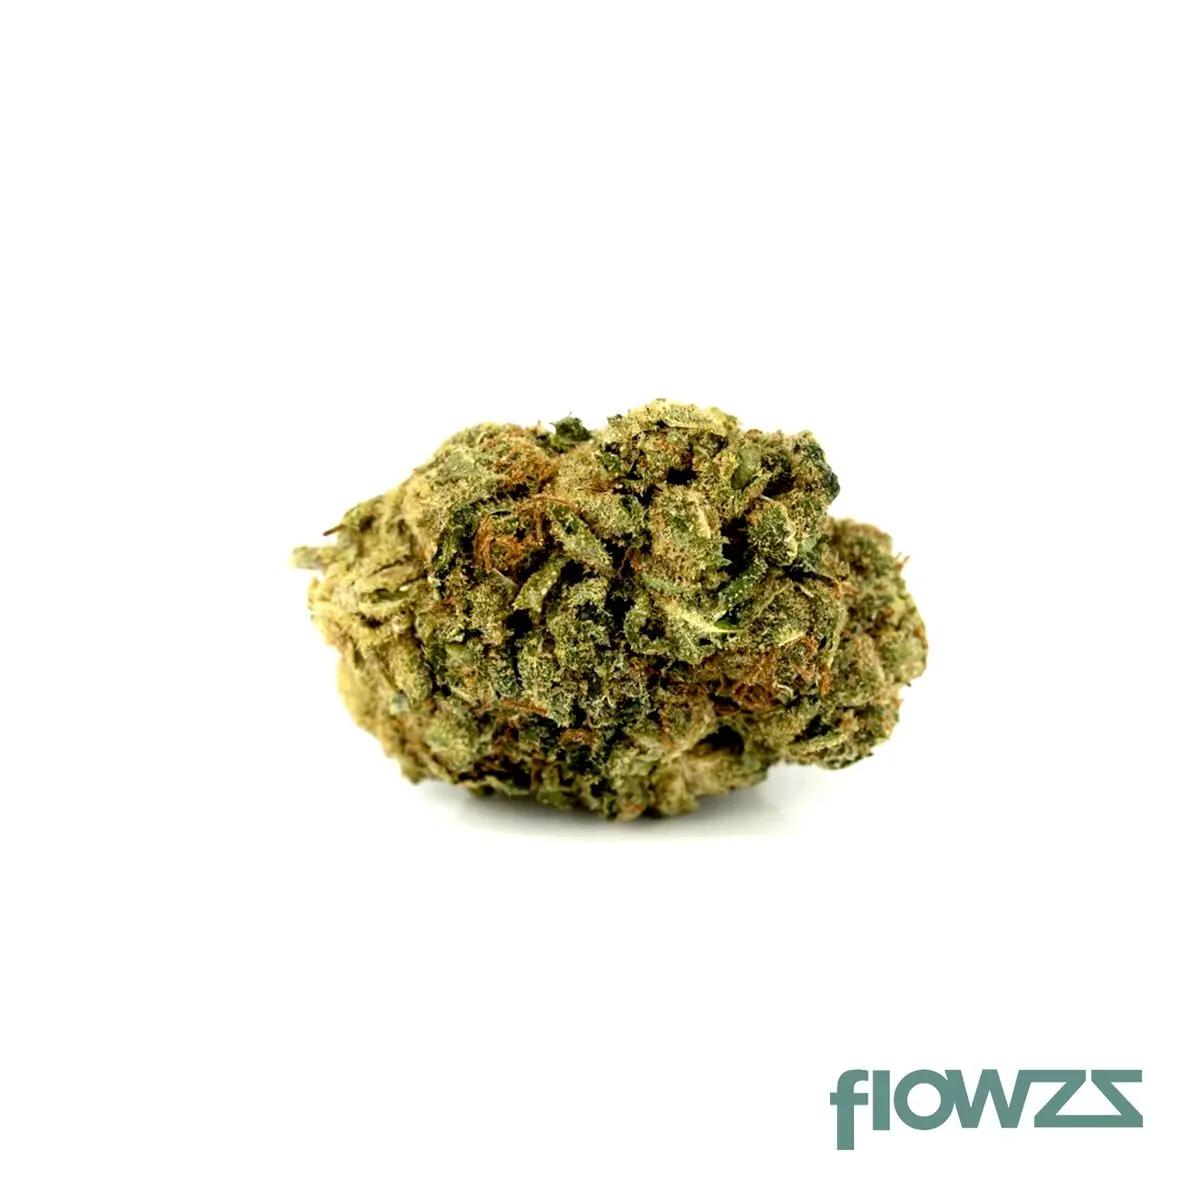 27/1 N!CE S Cannabisblüte Strawberry Banana Cansativa - flowzz.com Preisvergleich